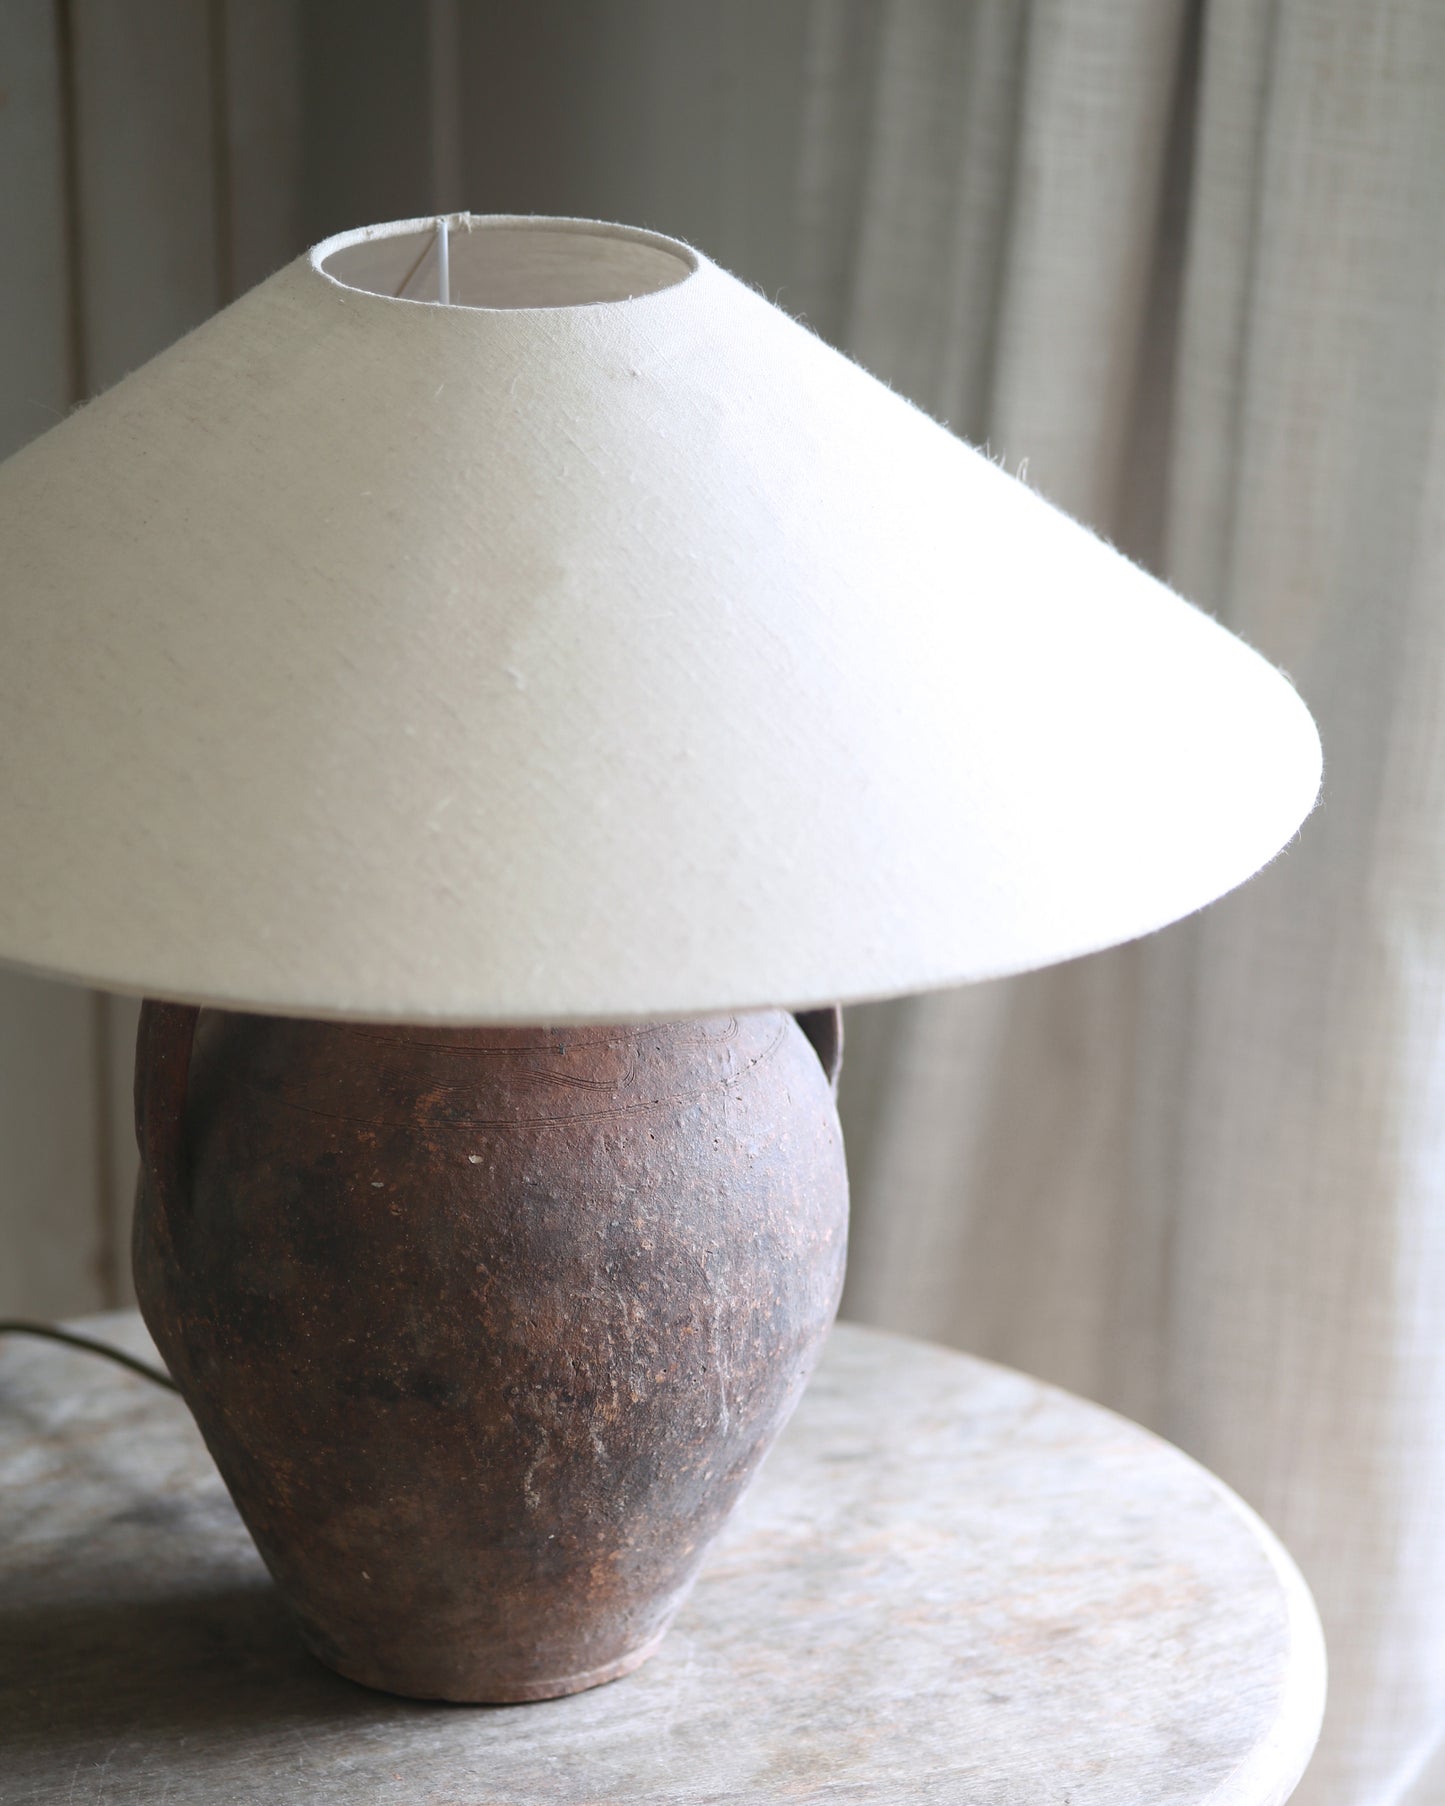 ANTIQUE CLAY LAMP NO. 40